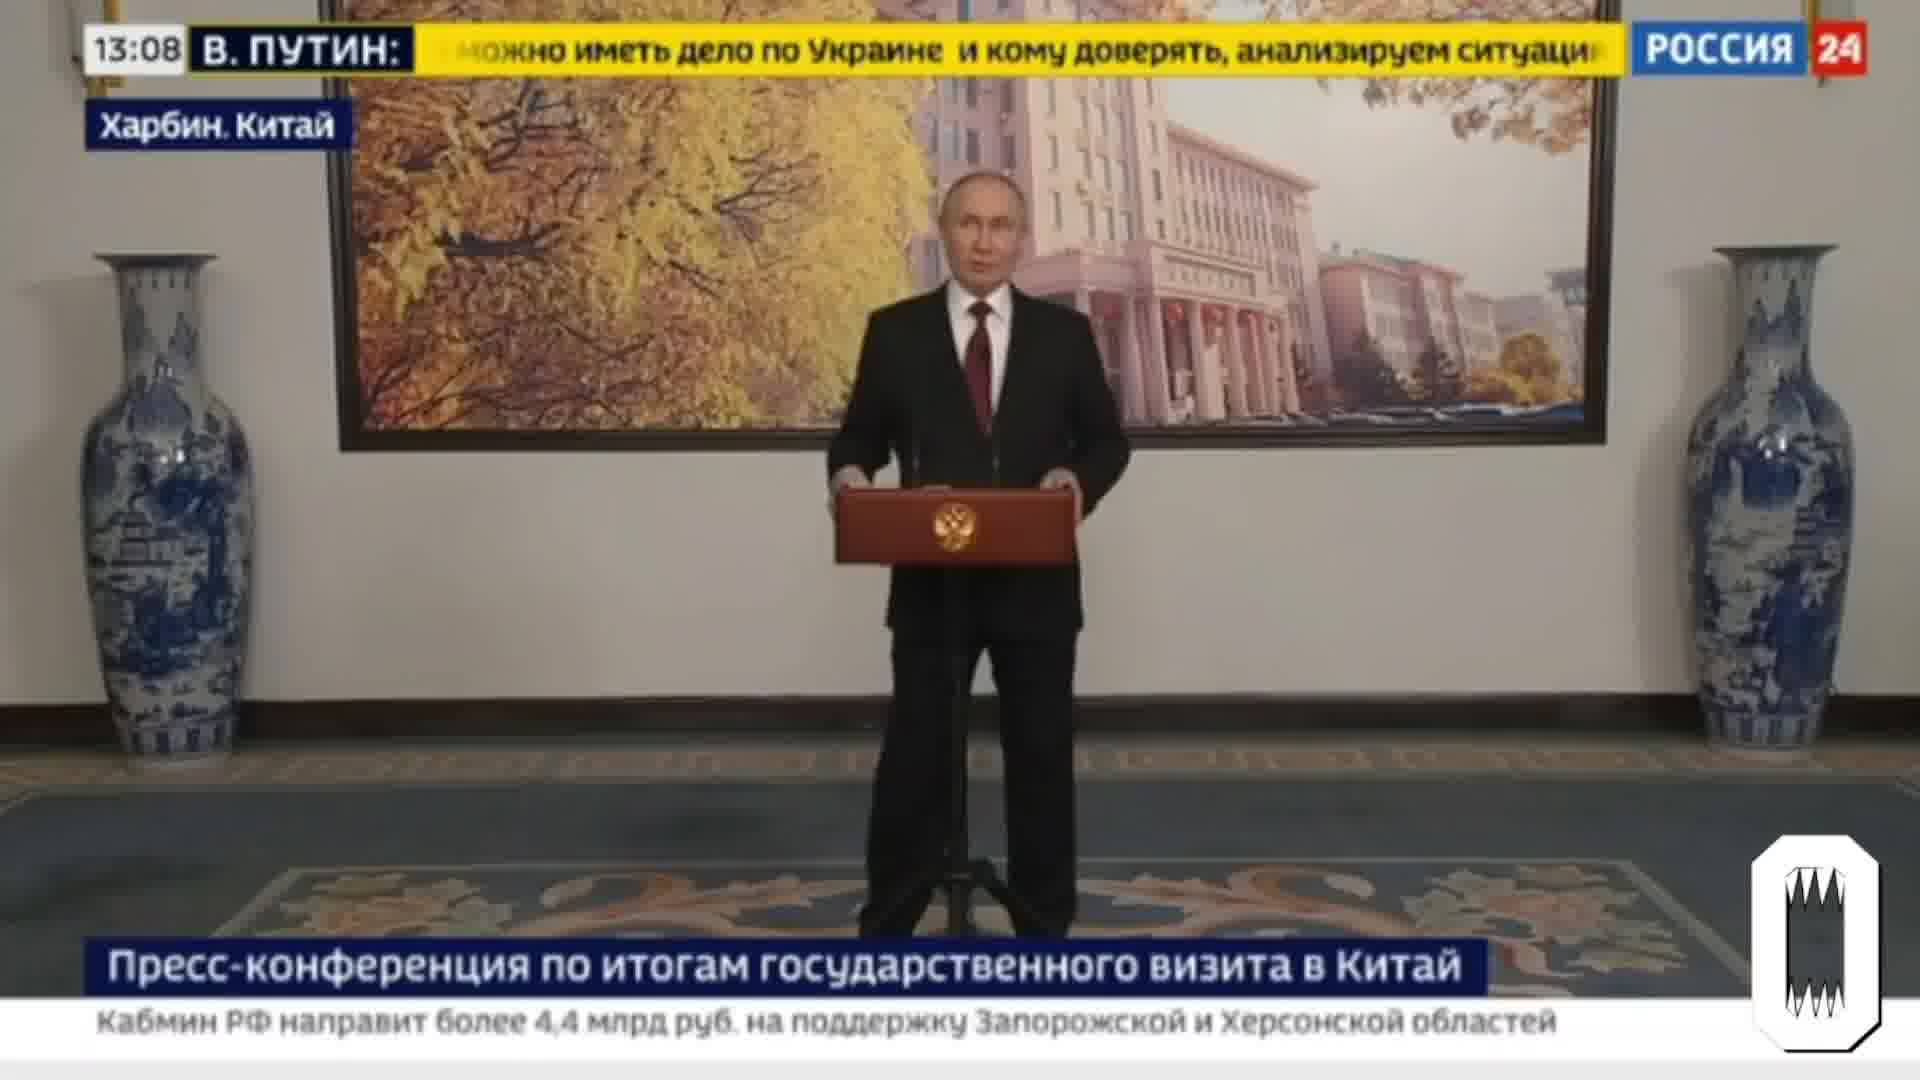 Poutine affirme que l'armée russe n'a pas l'ordre de prendre Kharkiv et que les troupes créent une zone sanitaire près de la frontière